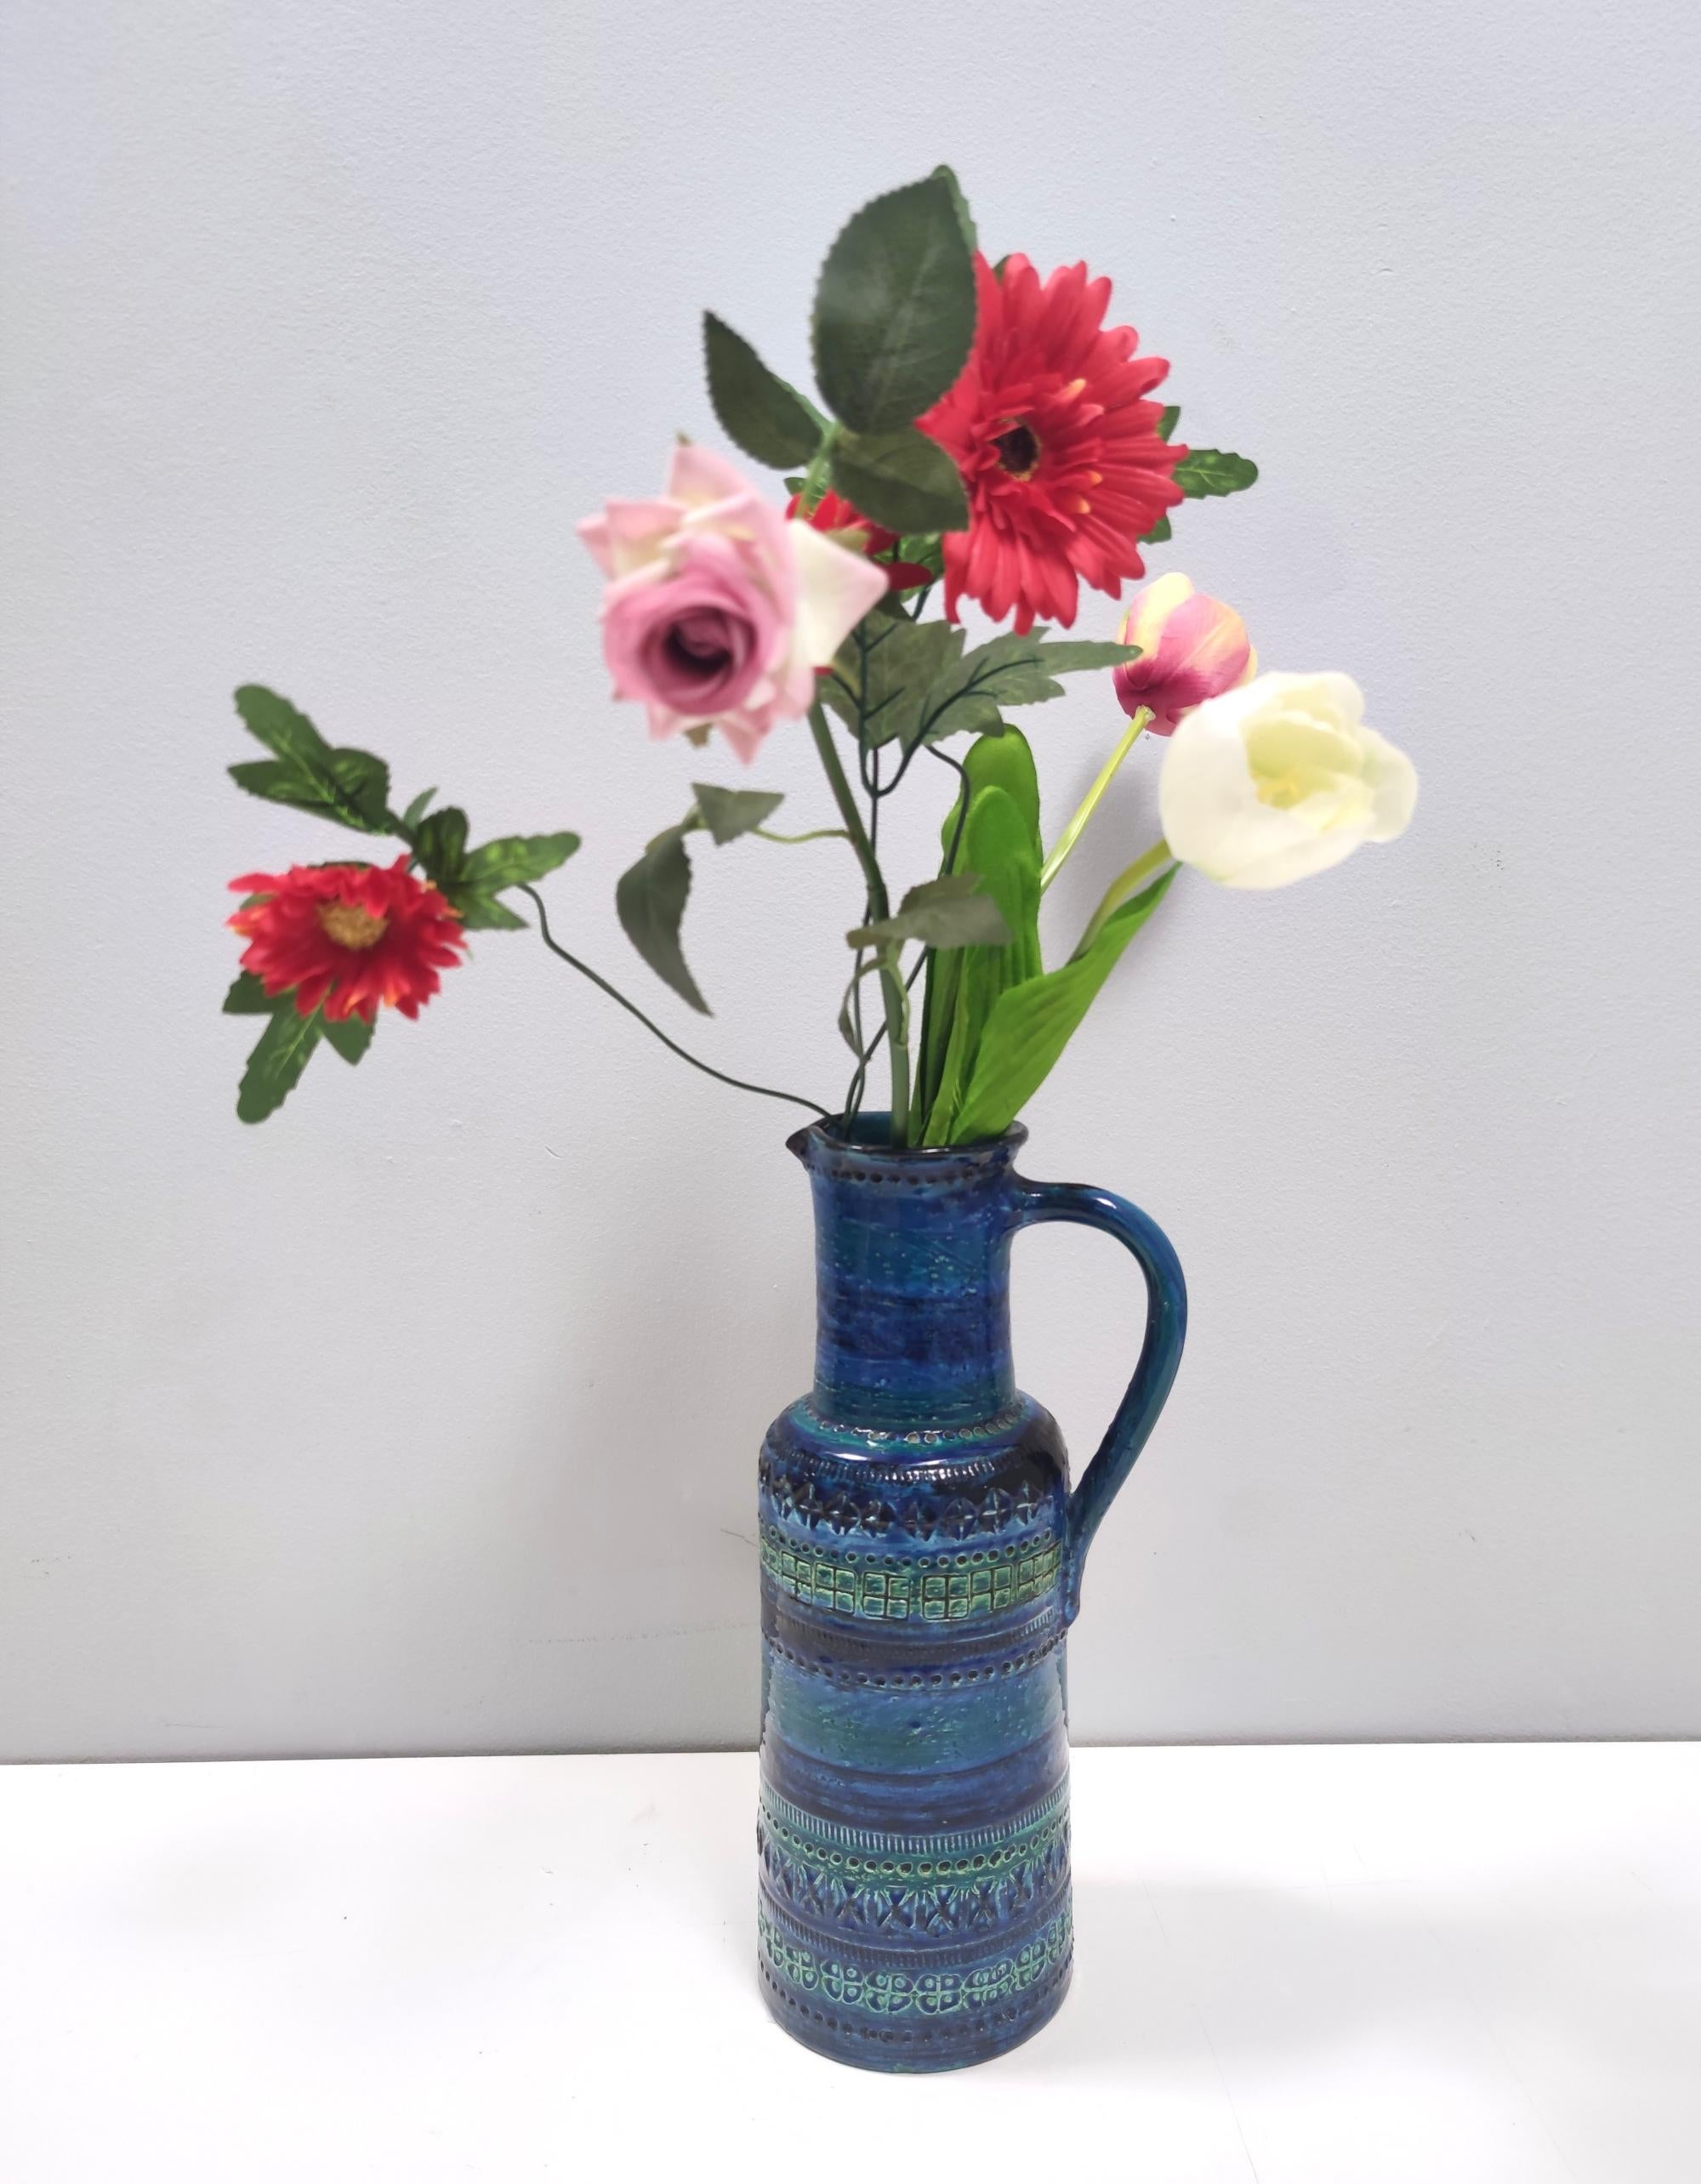 Il s'agit d'un vase bleu Rimini des années 1970. Fabriquées en Italie.
Il a été conçu par Aldo Londi et produit par Flavia Montelupo, également connue sous le nom de Bitossi.
Bitossi a été fondée en 1921 à Montelupo, une ville proche de Florence, et